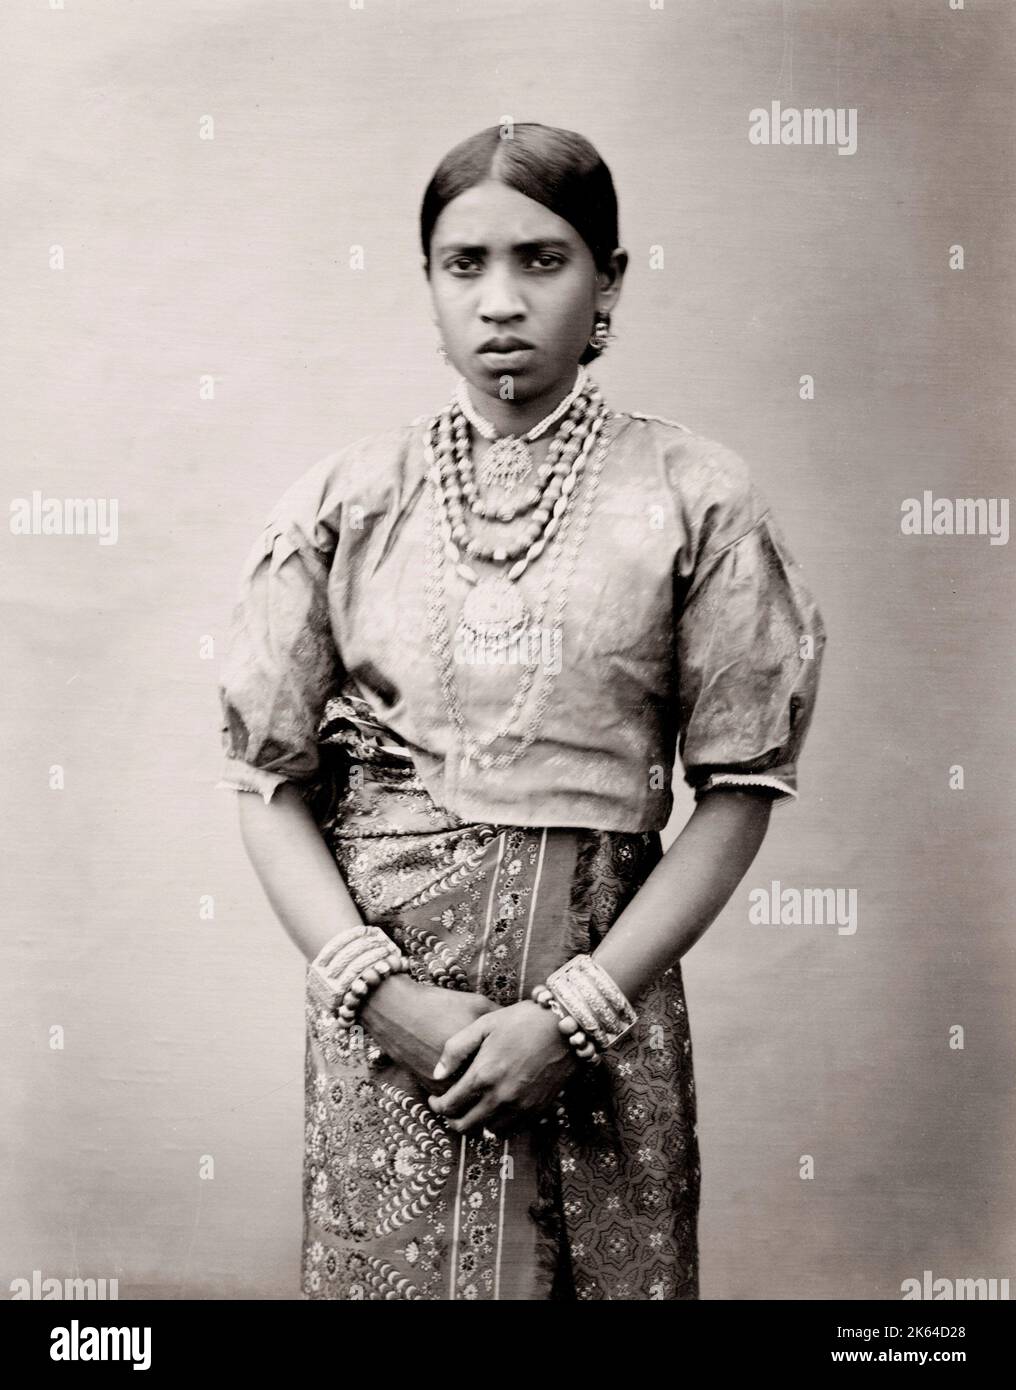 Photographie du XIXe siècle : portrait d'une fille indienne avec bijoux, colliers et bracelets, Inde. Banque D'Images